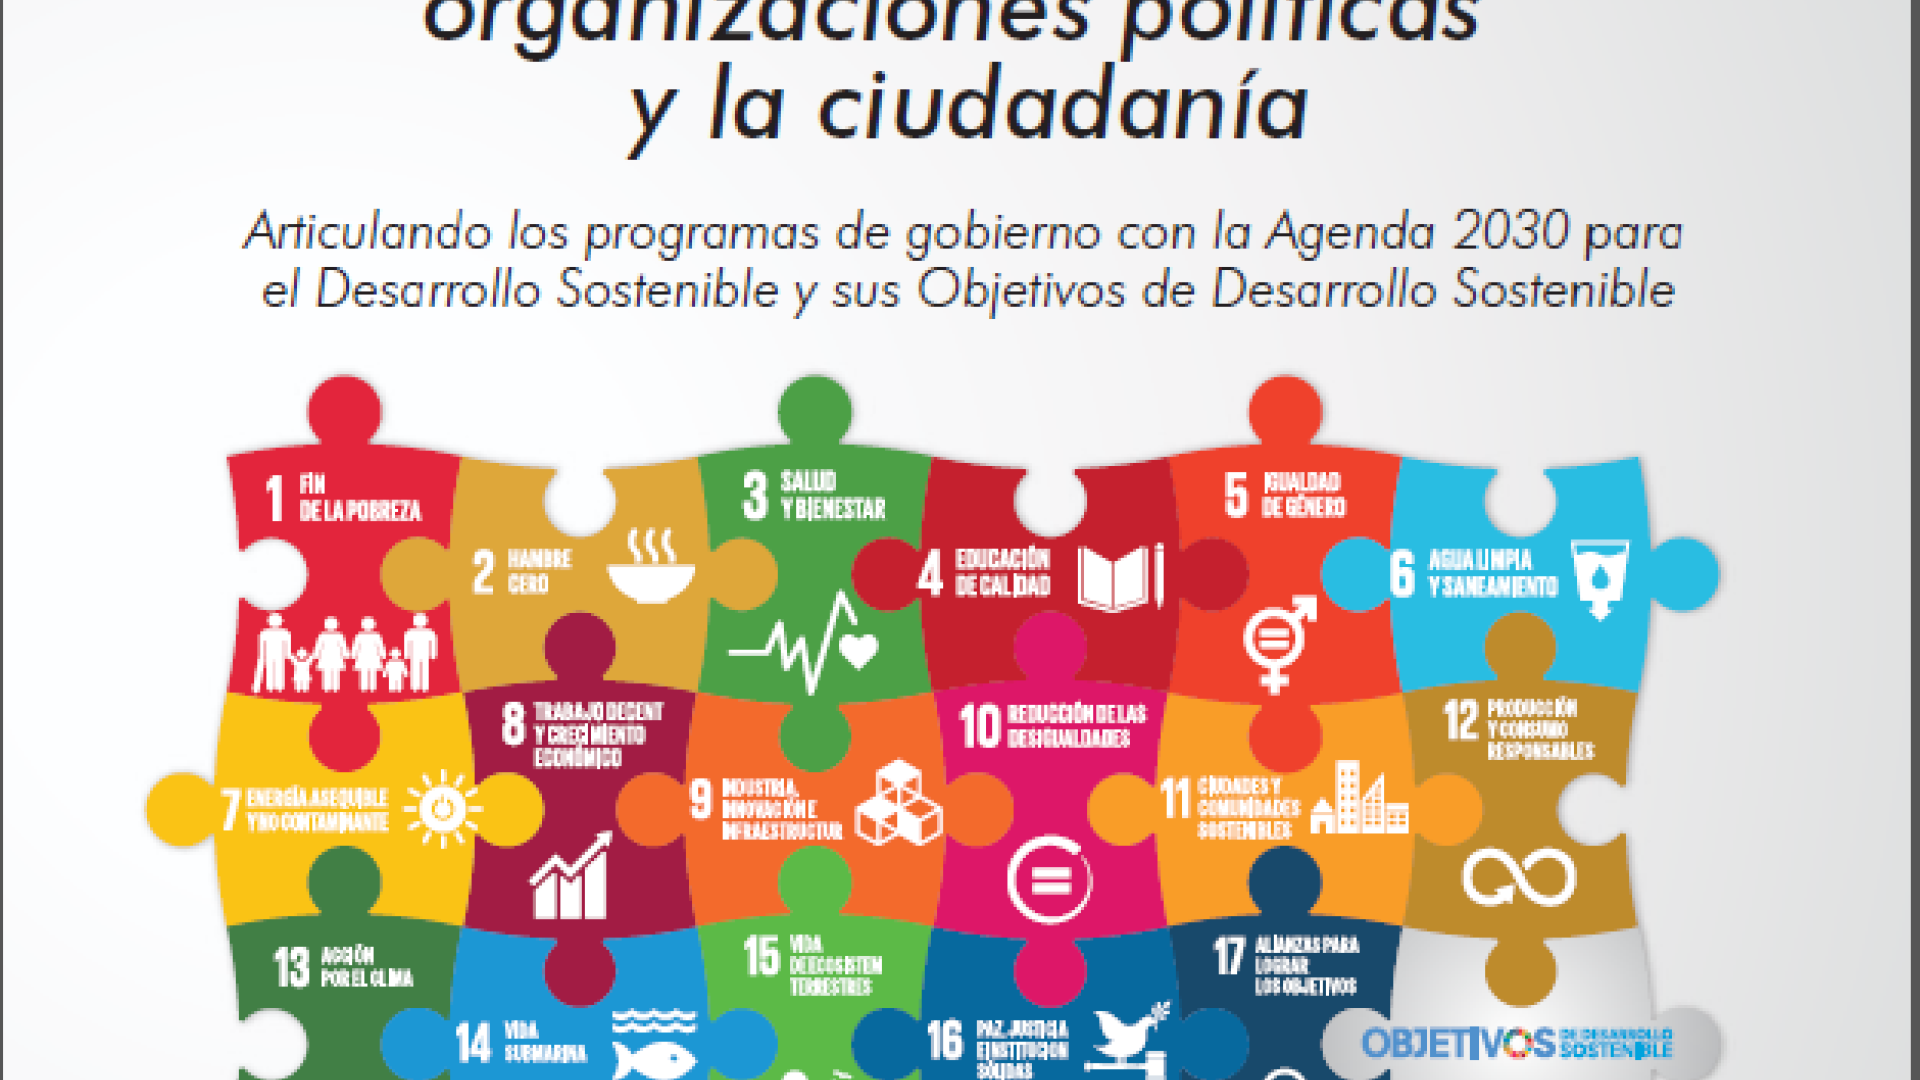 Guia De Orientacion Para Las Organizaciones Politicas Y La Ciudadania Programa De Las Naciones Unidas Para El Desarrollo